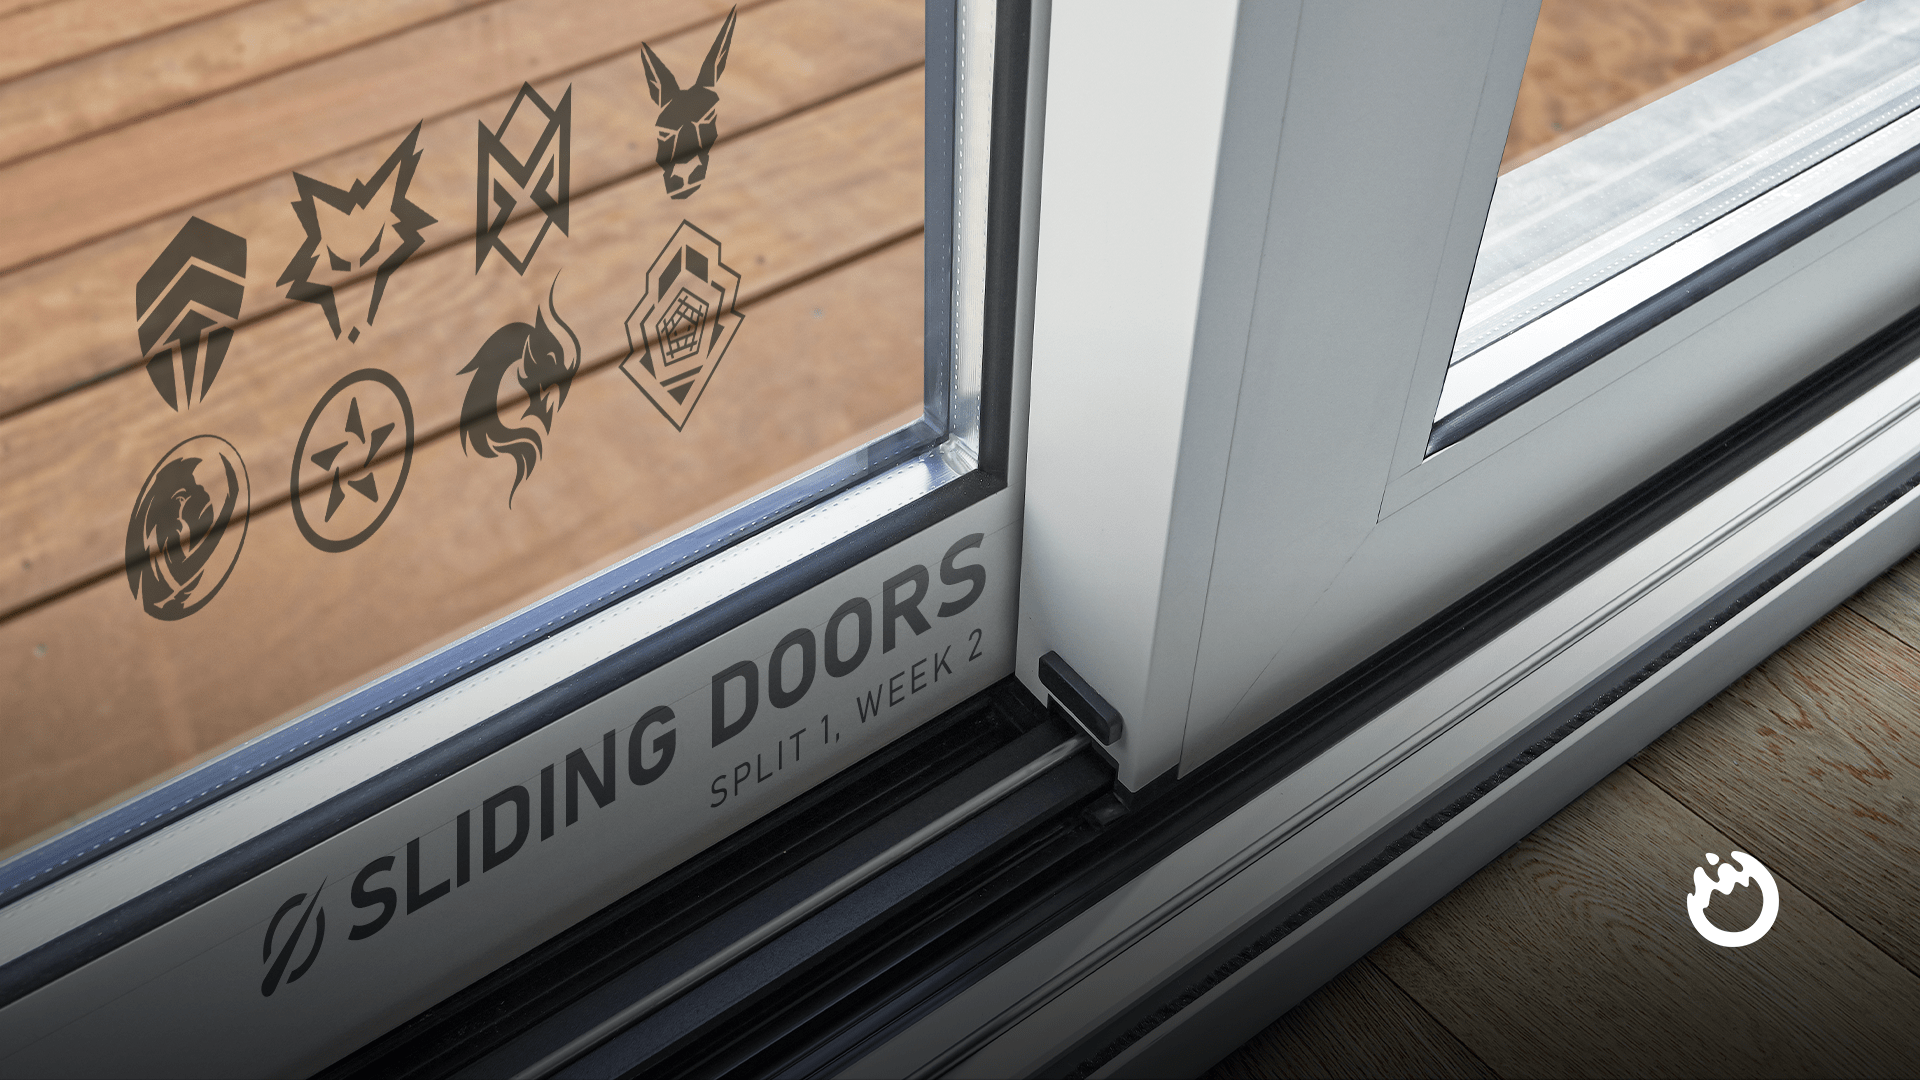 Sliding Doors: LCO 2022 Split 1, Week 2